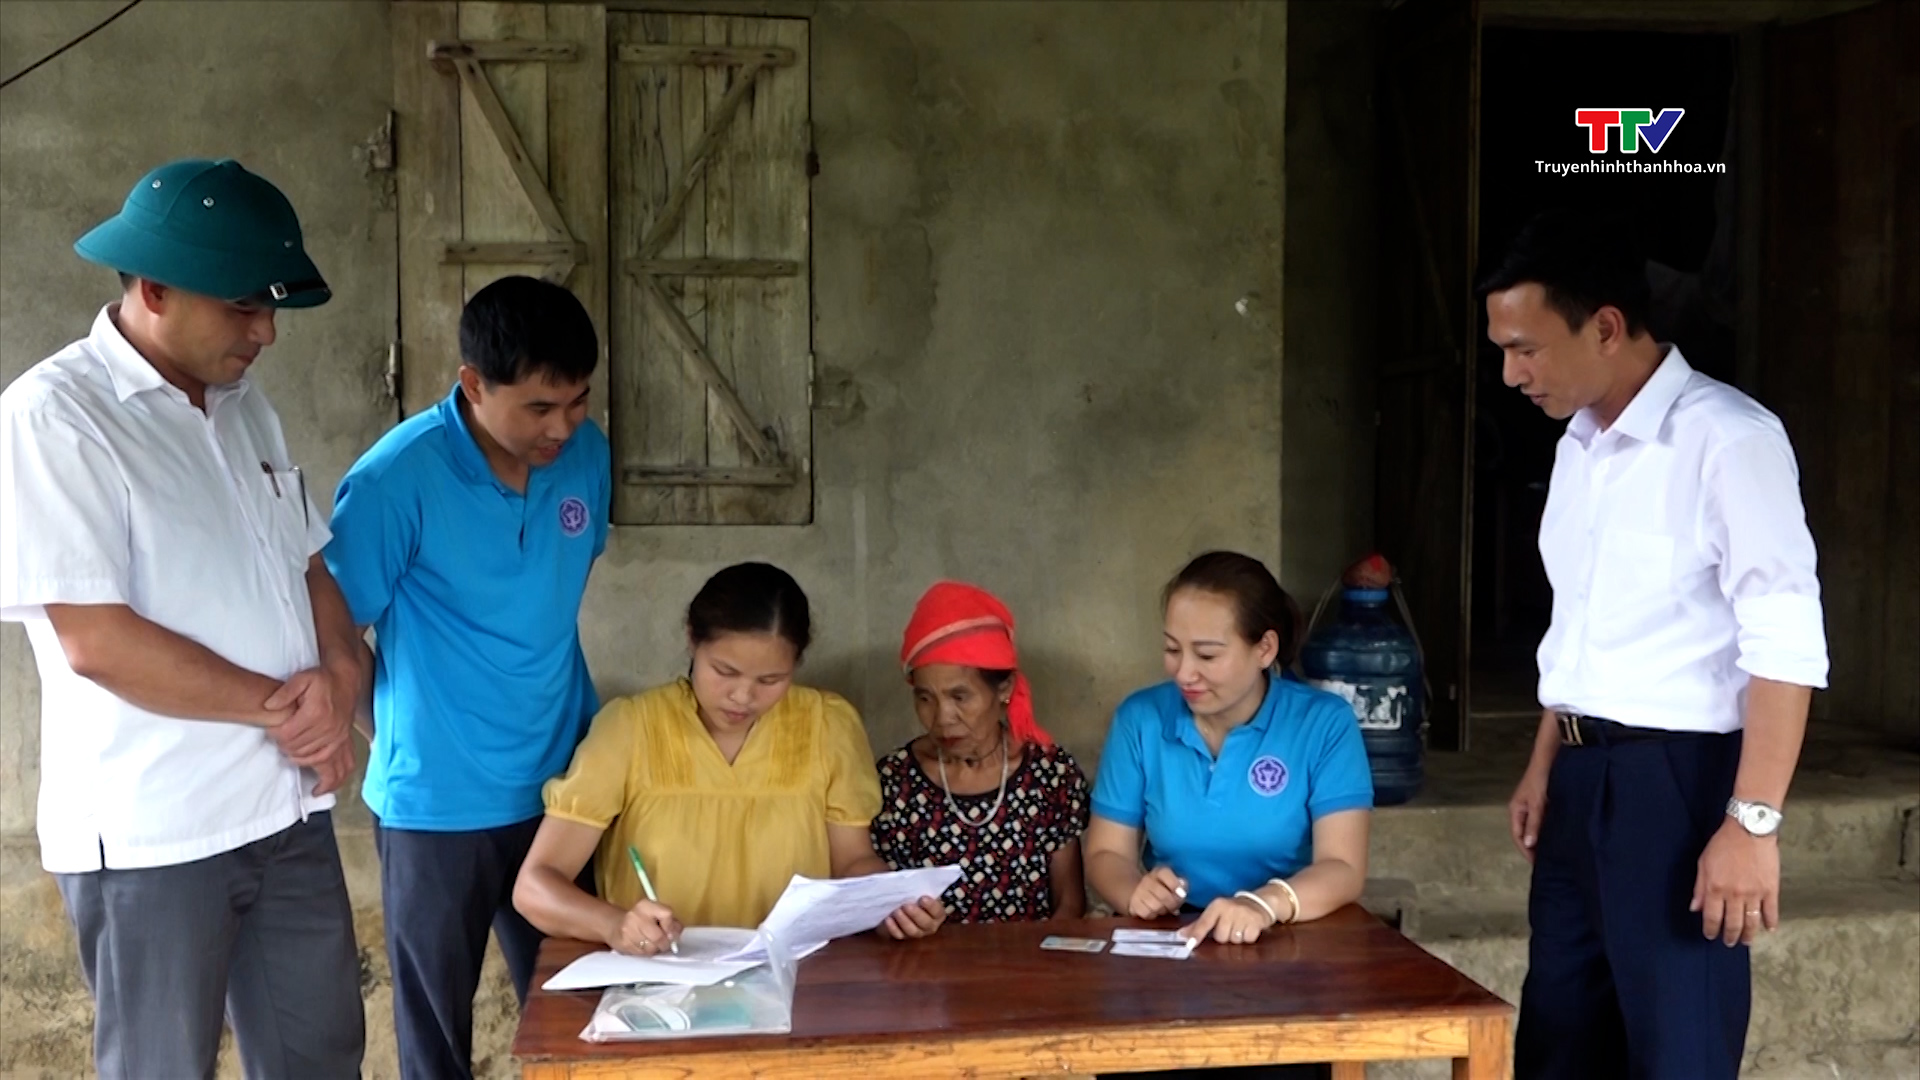 Bảo hiểm xã hội huyện Như Xuân tuyên truyền, vận động người dân tham gia Bảo hiểm xã hội tự nguyện, Bảo hiểm y tế hộ gia đình - Ảnh 2.